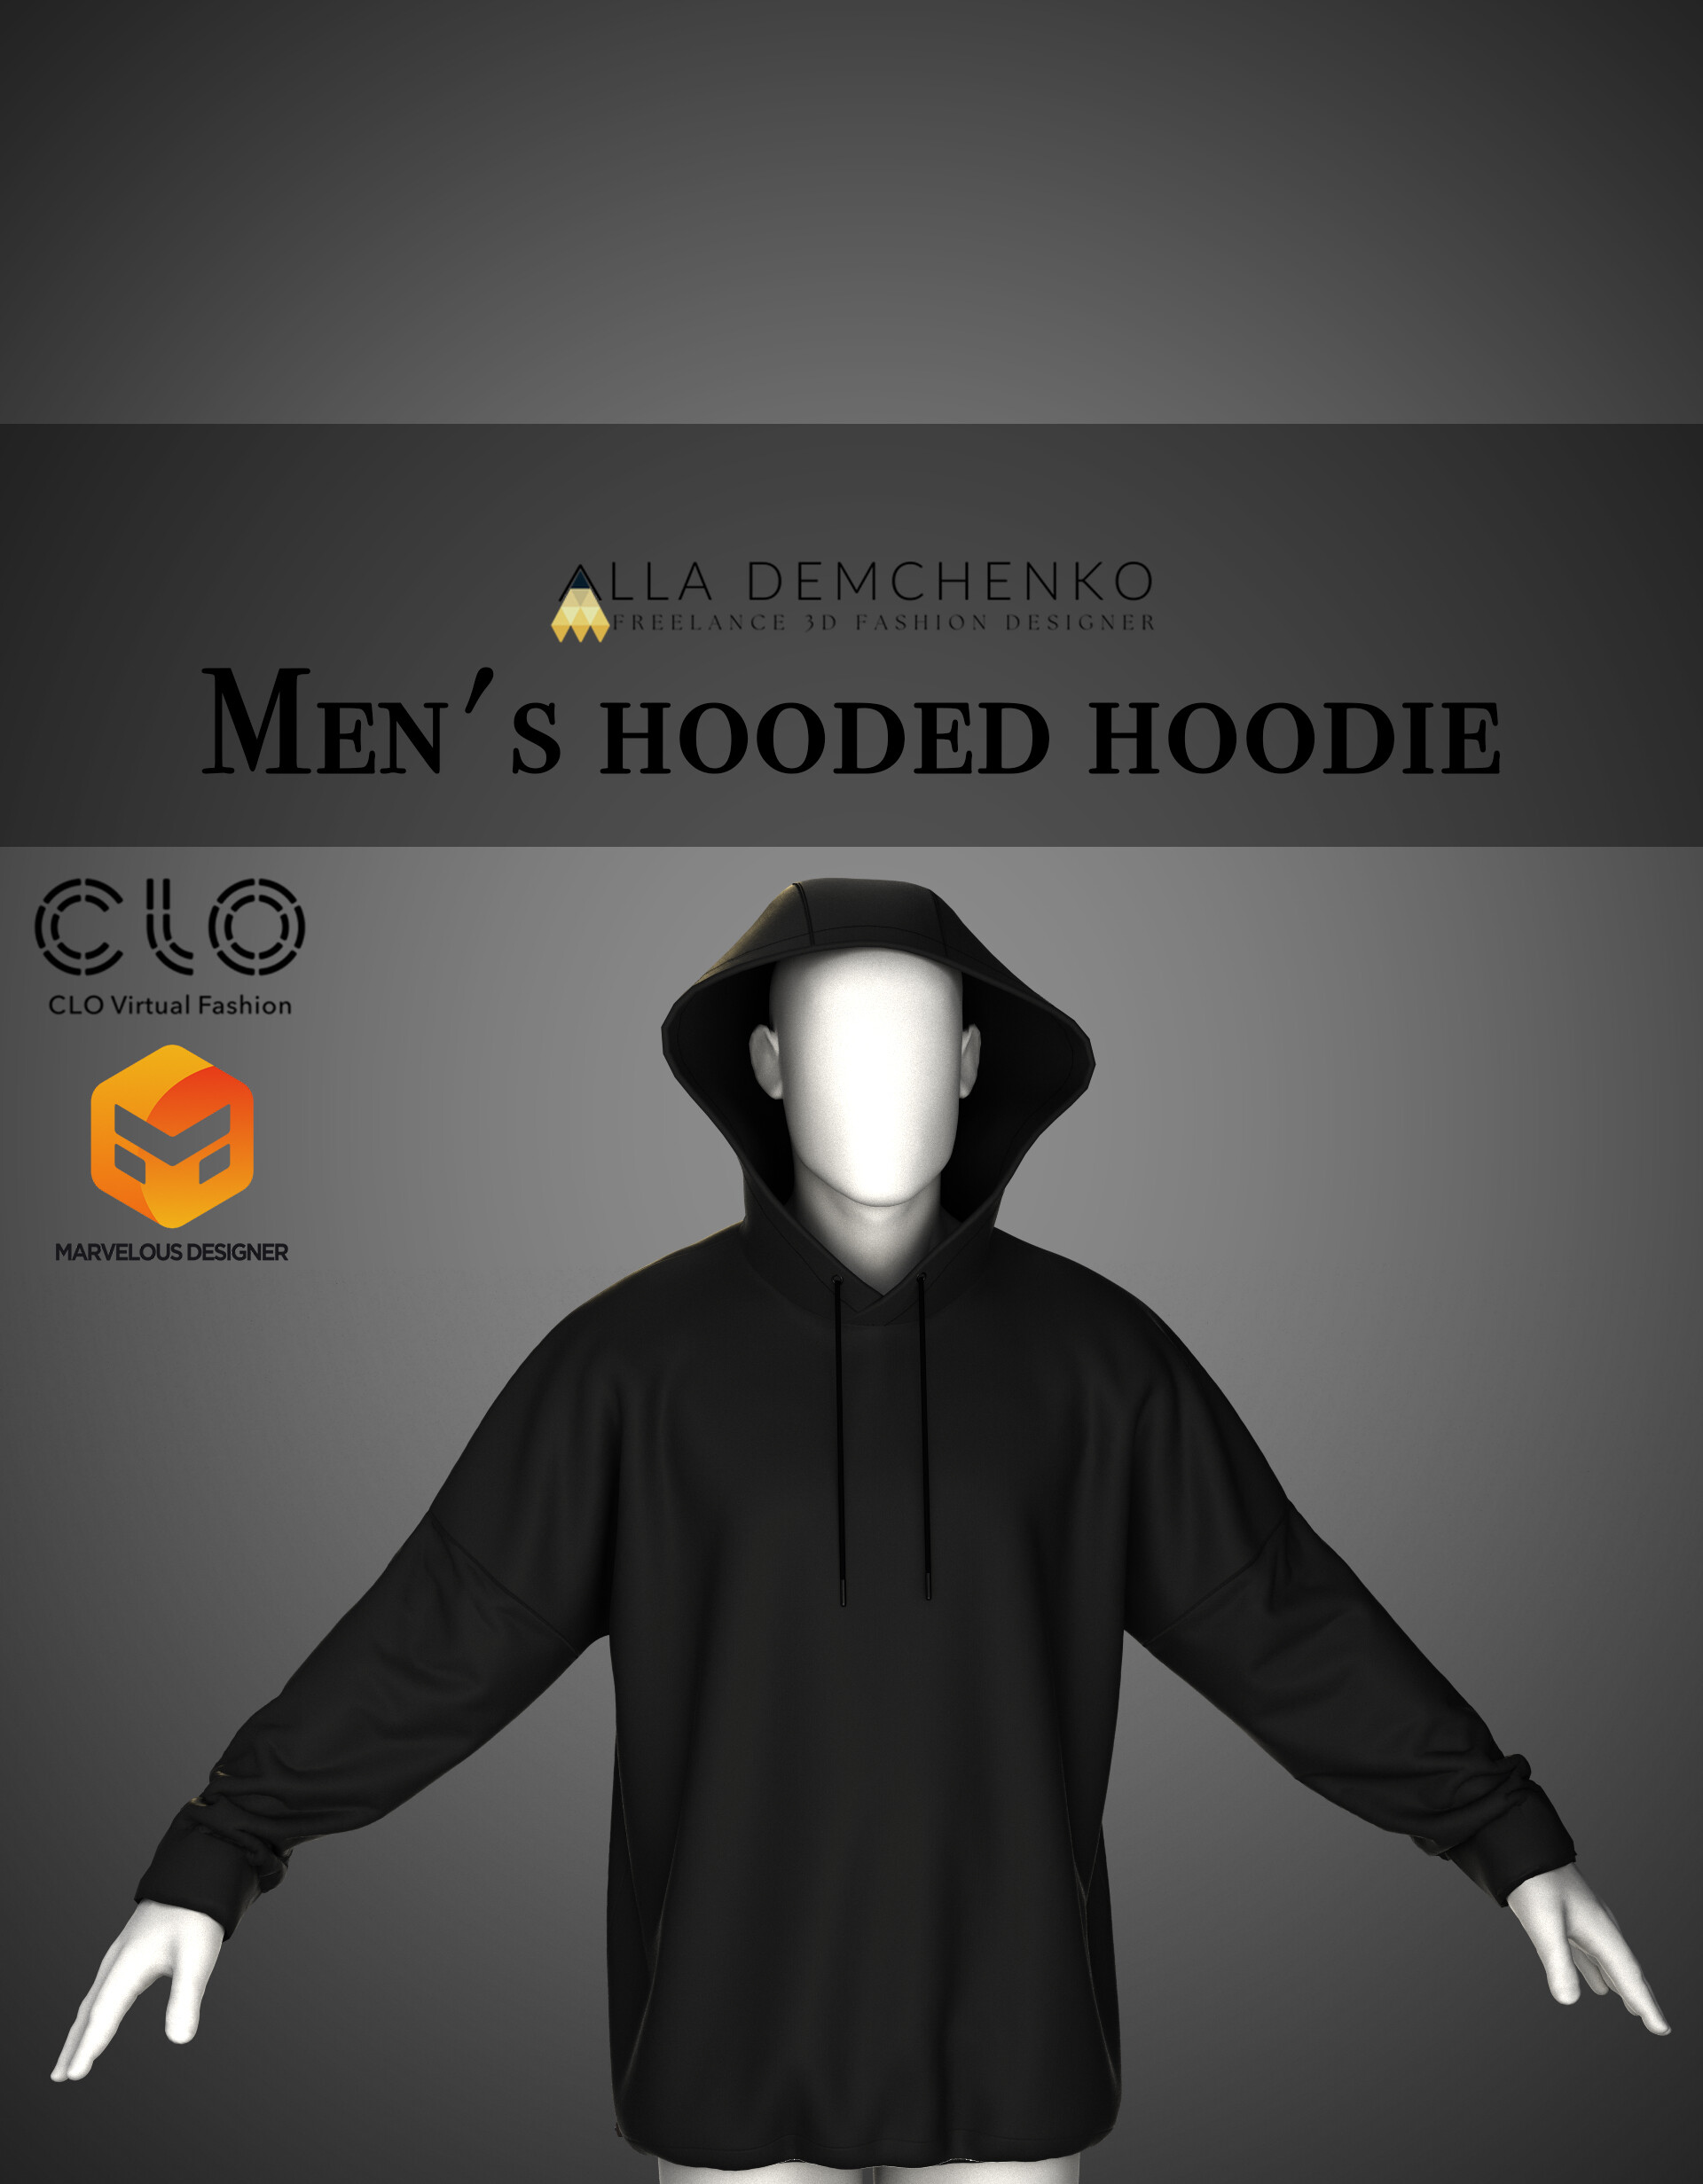 ArtStation - Hooded Hoodie for Men